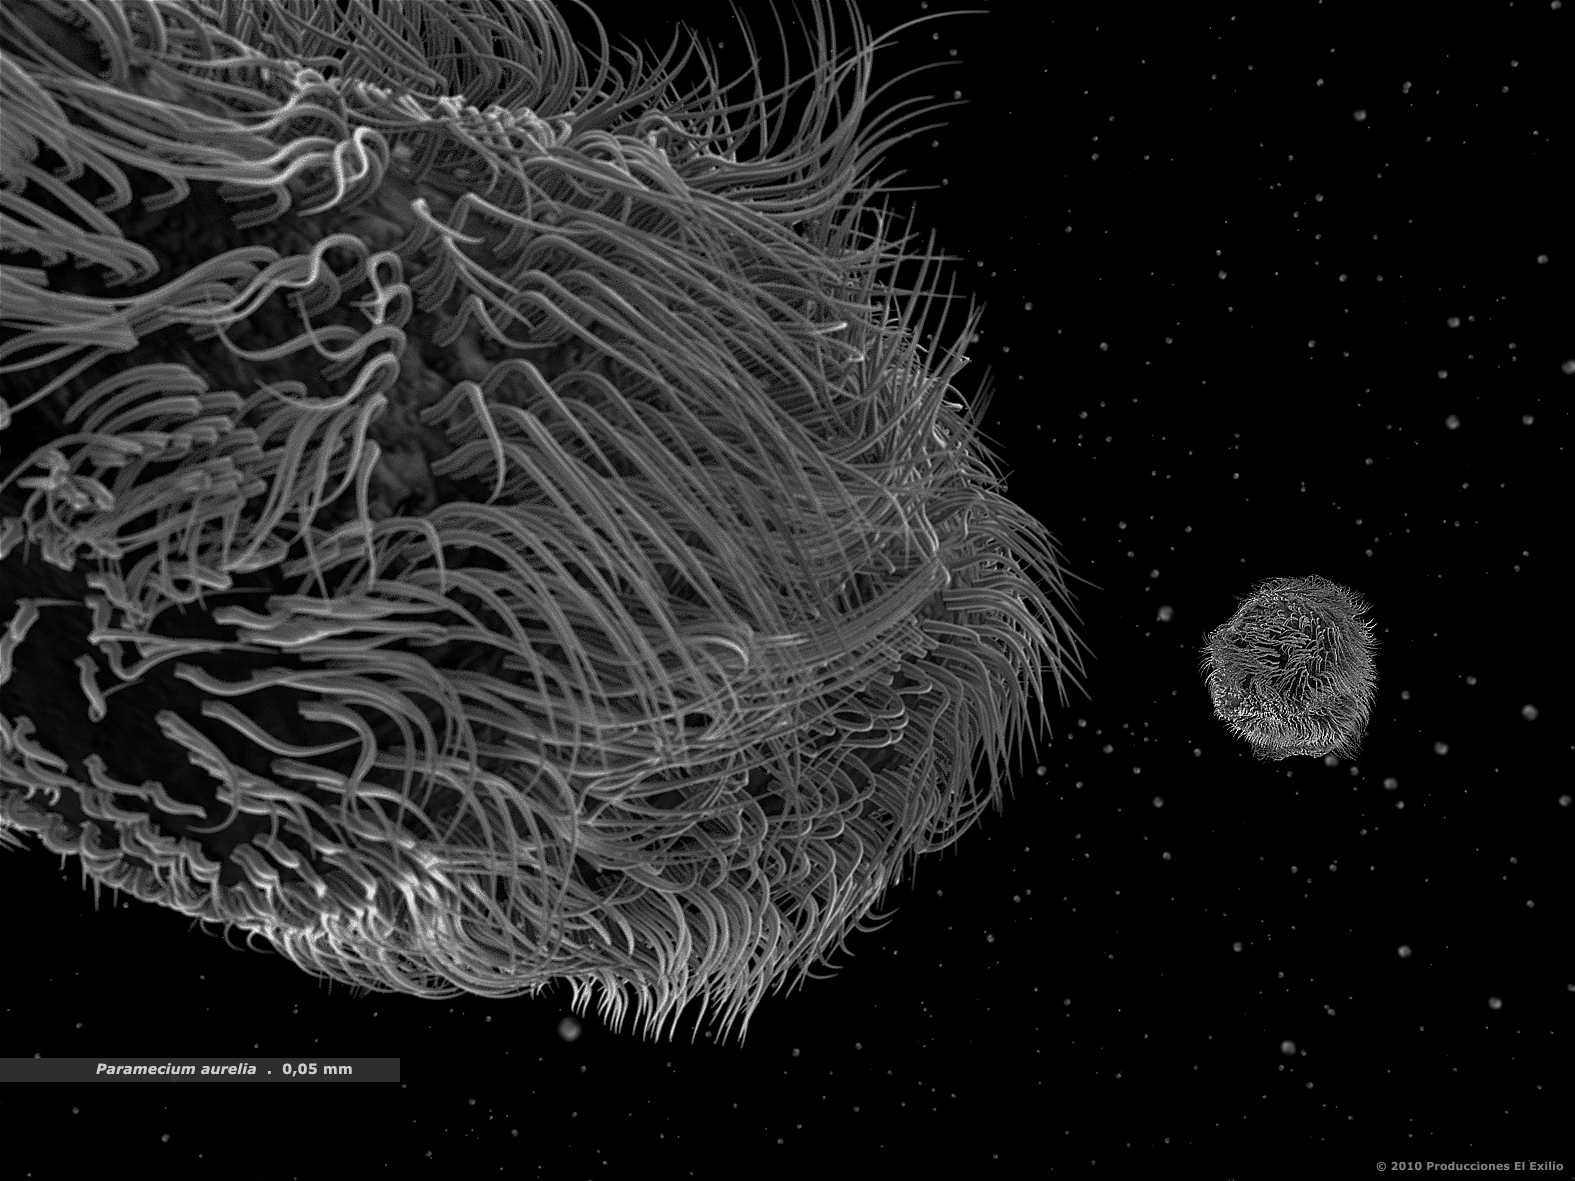 documental-fulldome-nanocam-el-exilio-paramecium aurelia-1575x1181